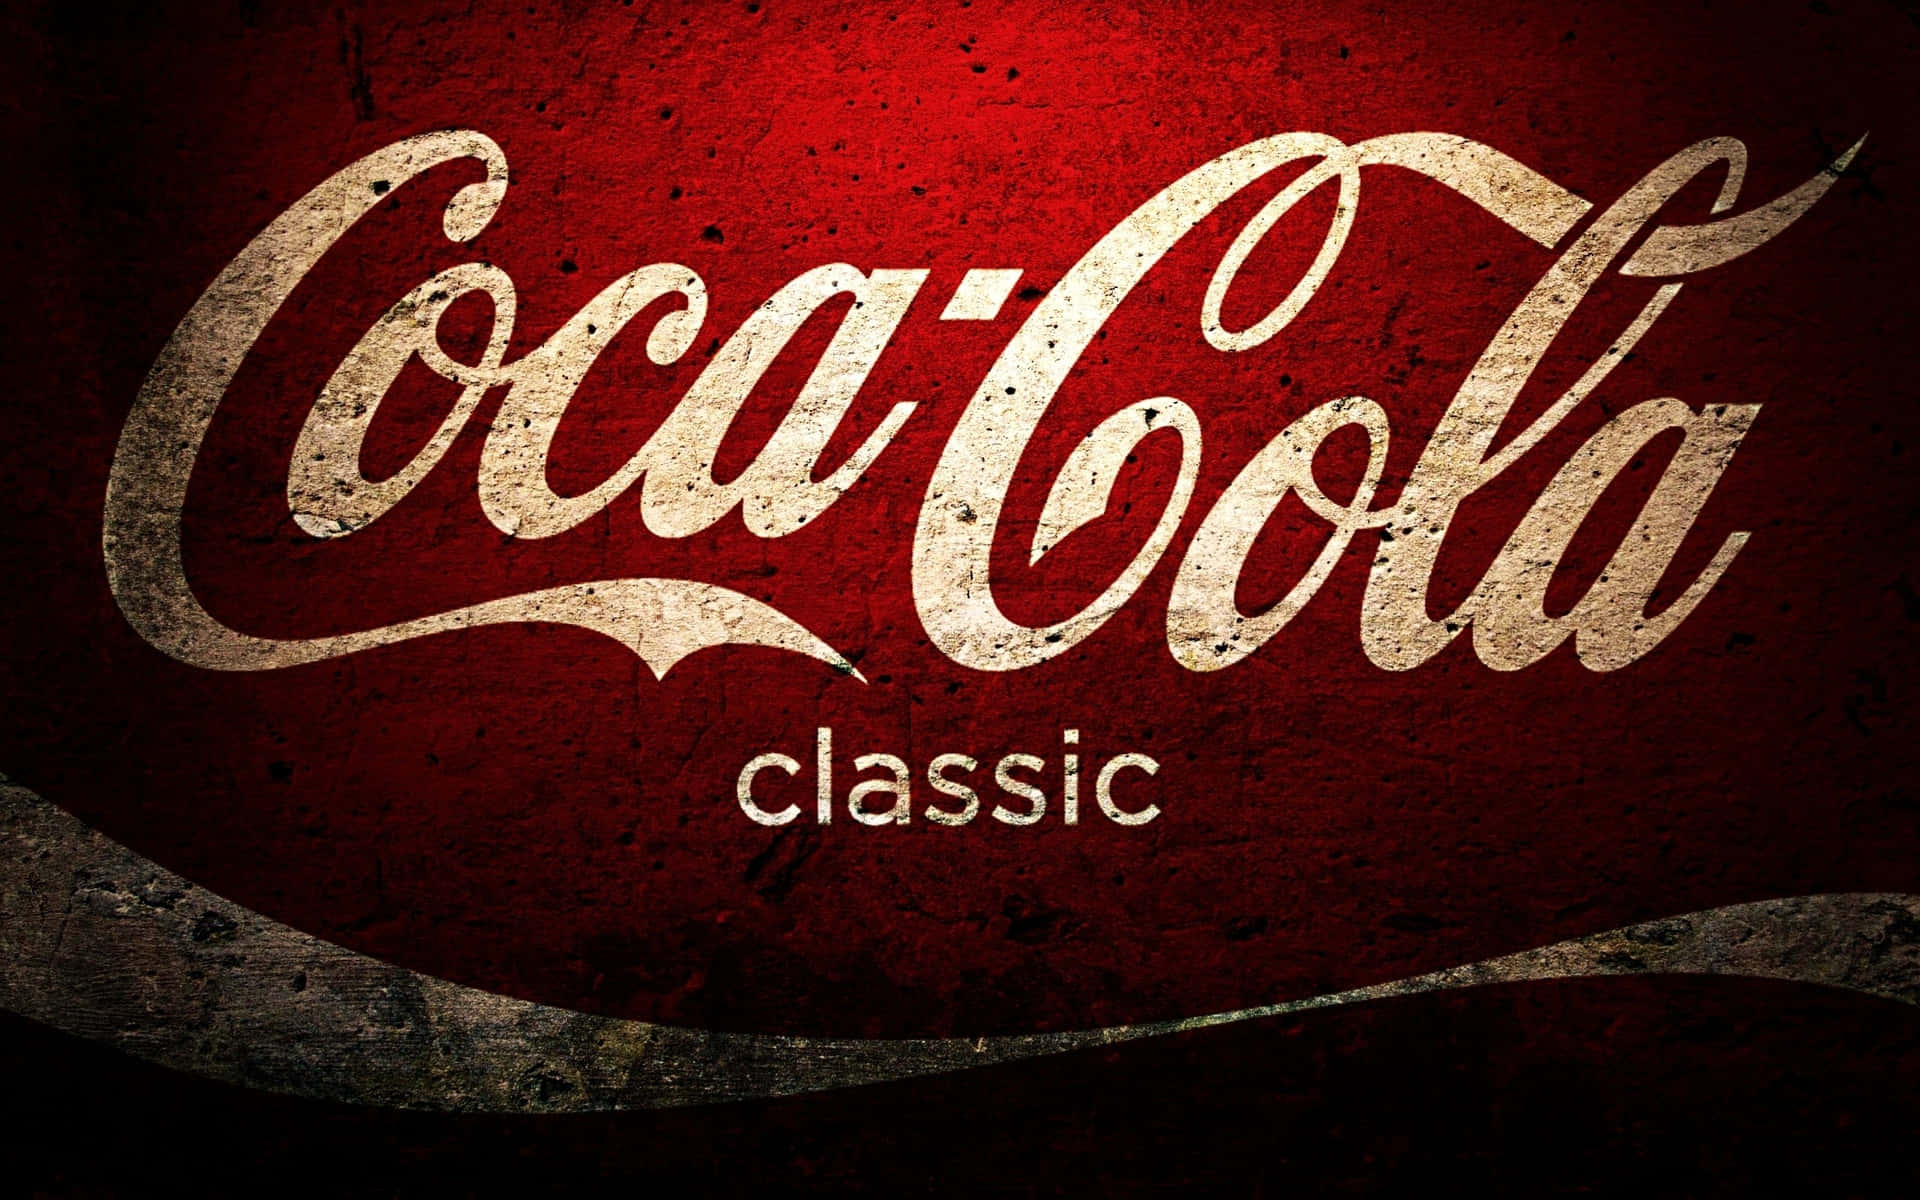 Cocaklassiska Logotypen På En Röd Bakgrund